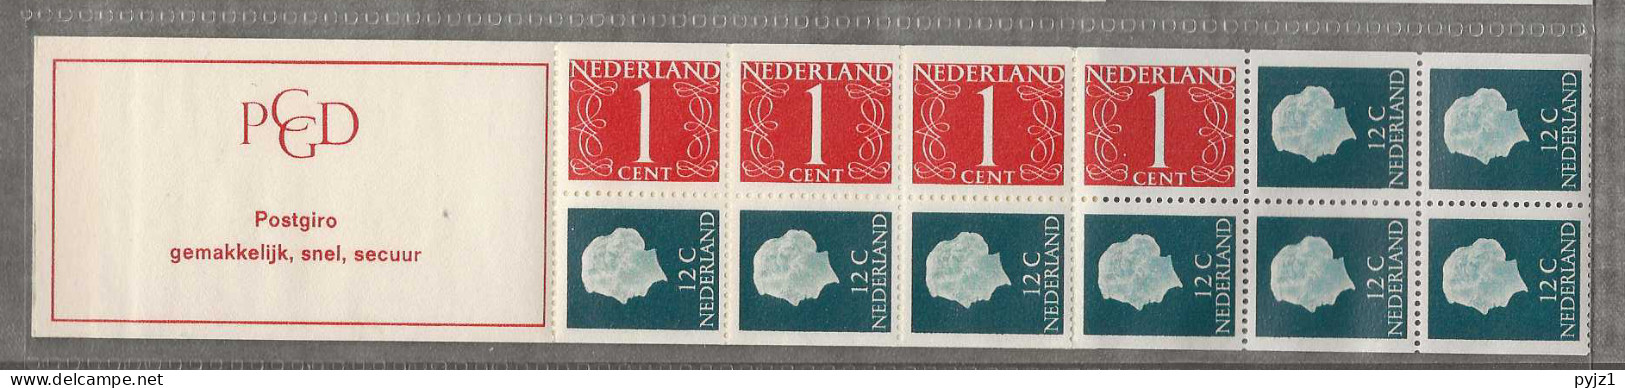 1969 MNH Nederland NVPH PB 8bF - Cuadernillos